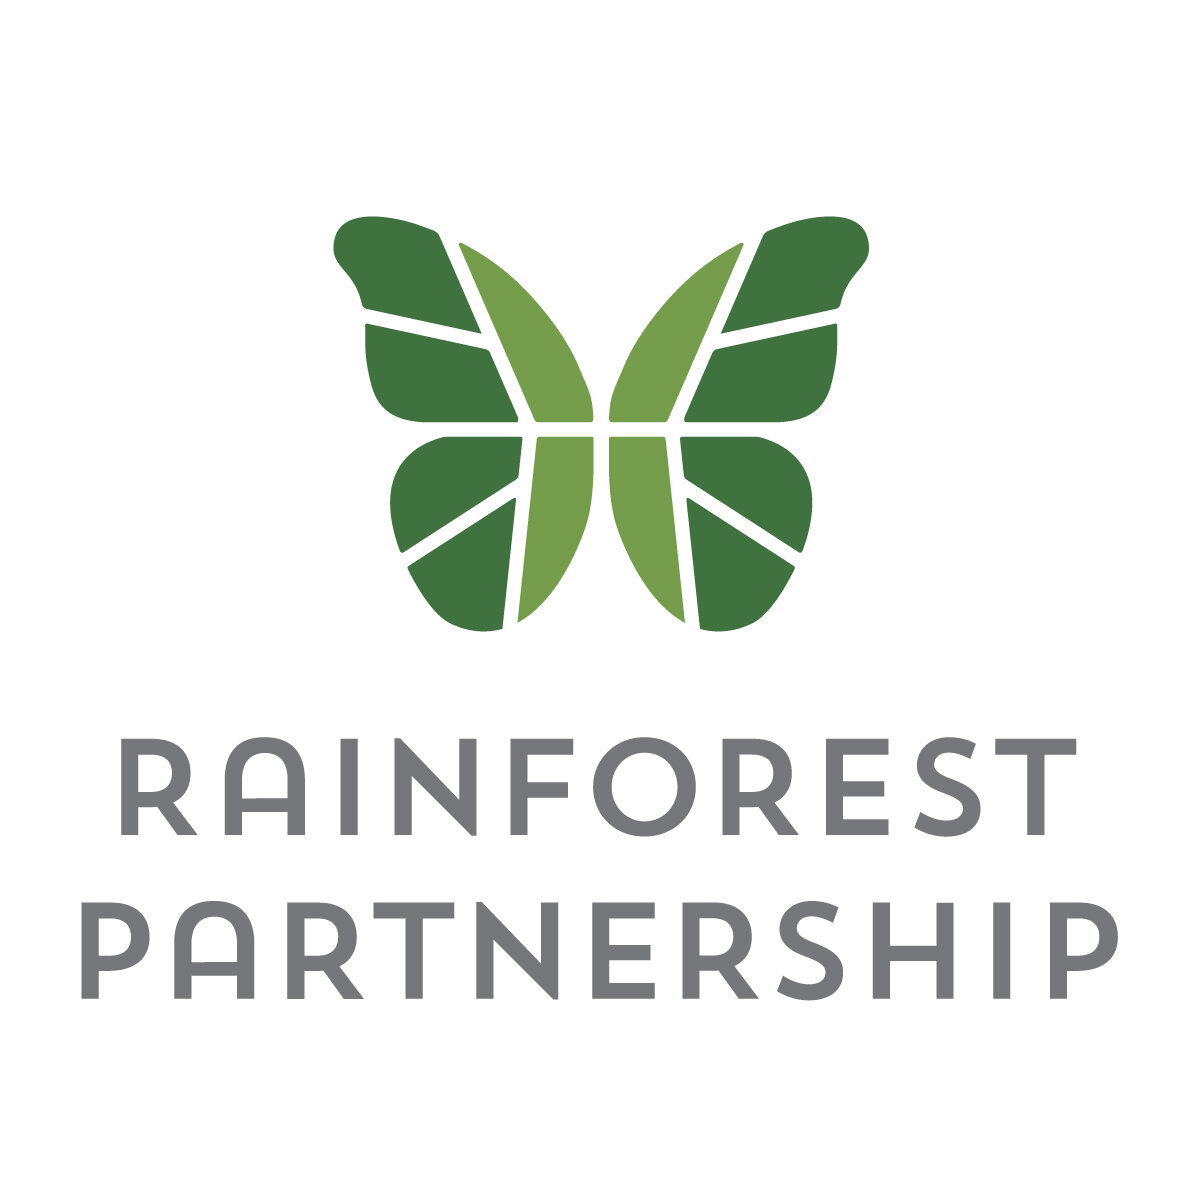 Rainforest Partnership Vertical_green.jpg